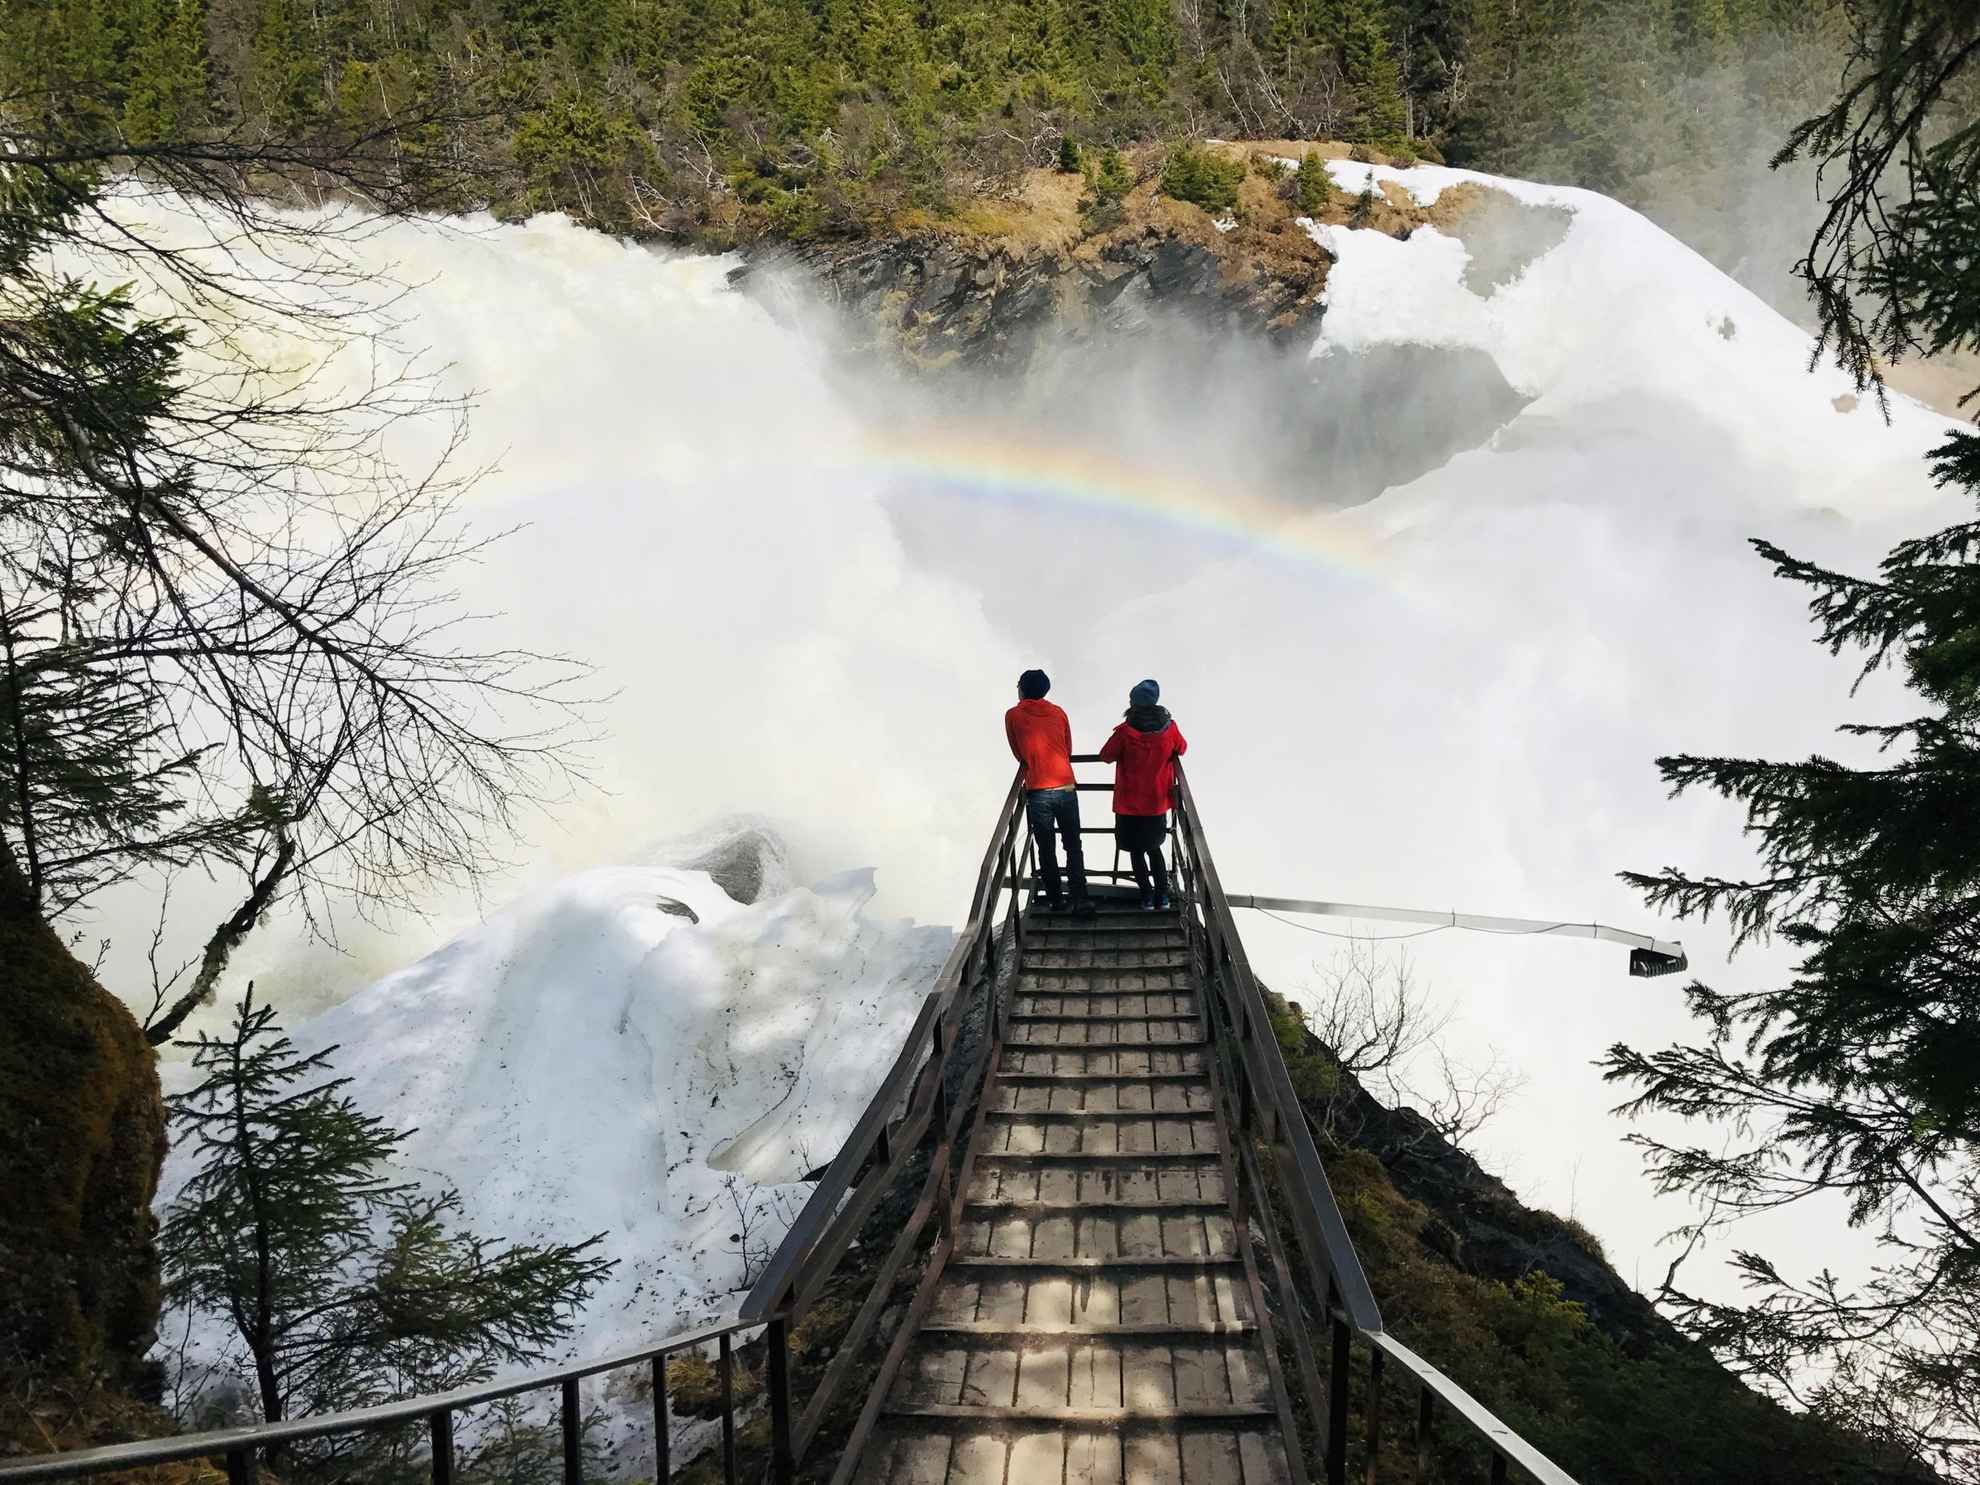 Zwei Personen blicken auf einen riesigen Wasserfall. Das Wasser des Wasserfalls erzeugt einen Regenbogen.